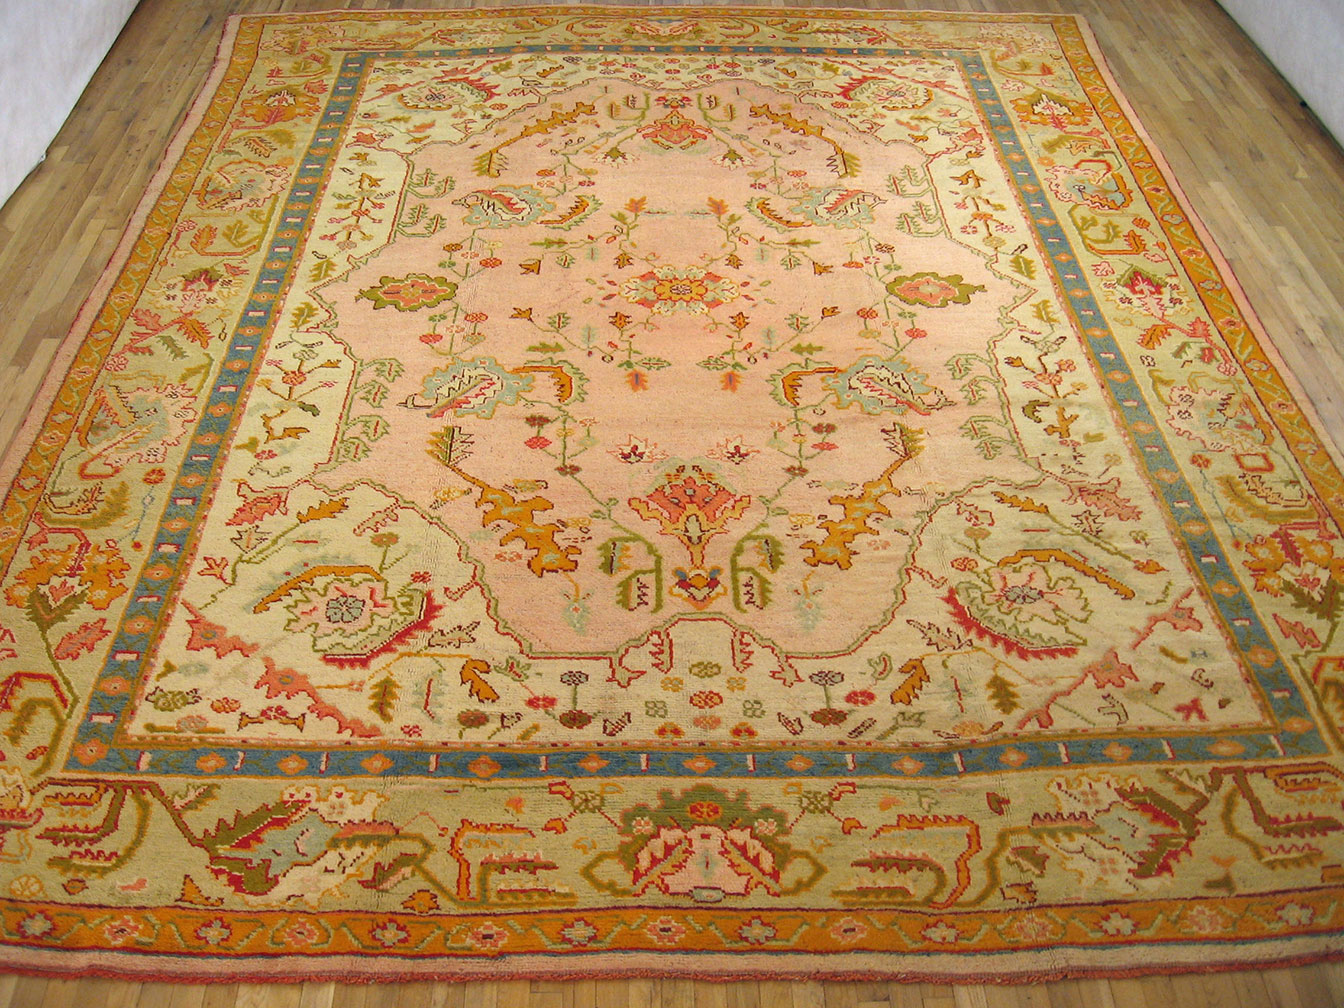 Antique oushak Carpet - # 52190